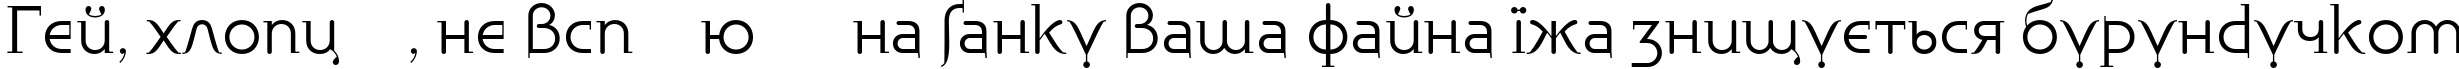 Пример написания шрифтом Bublik Light текста на украинском